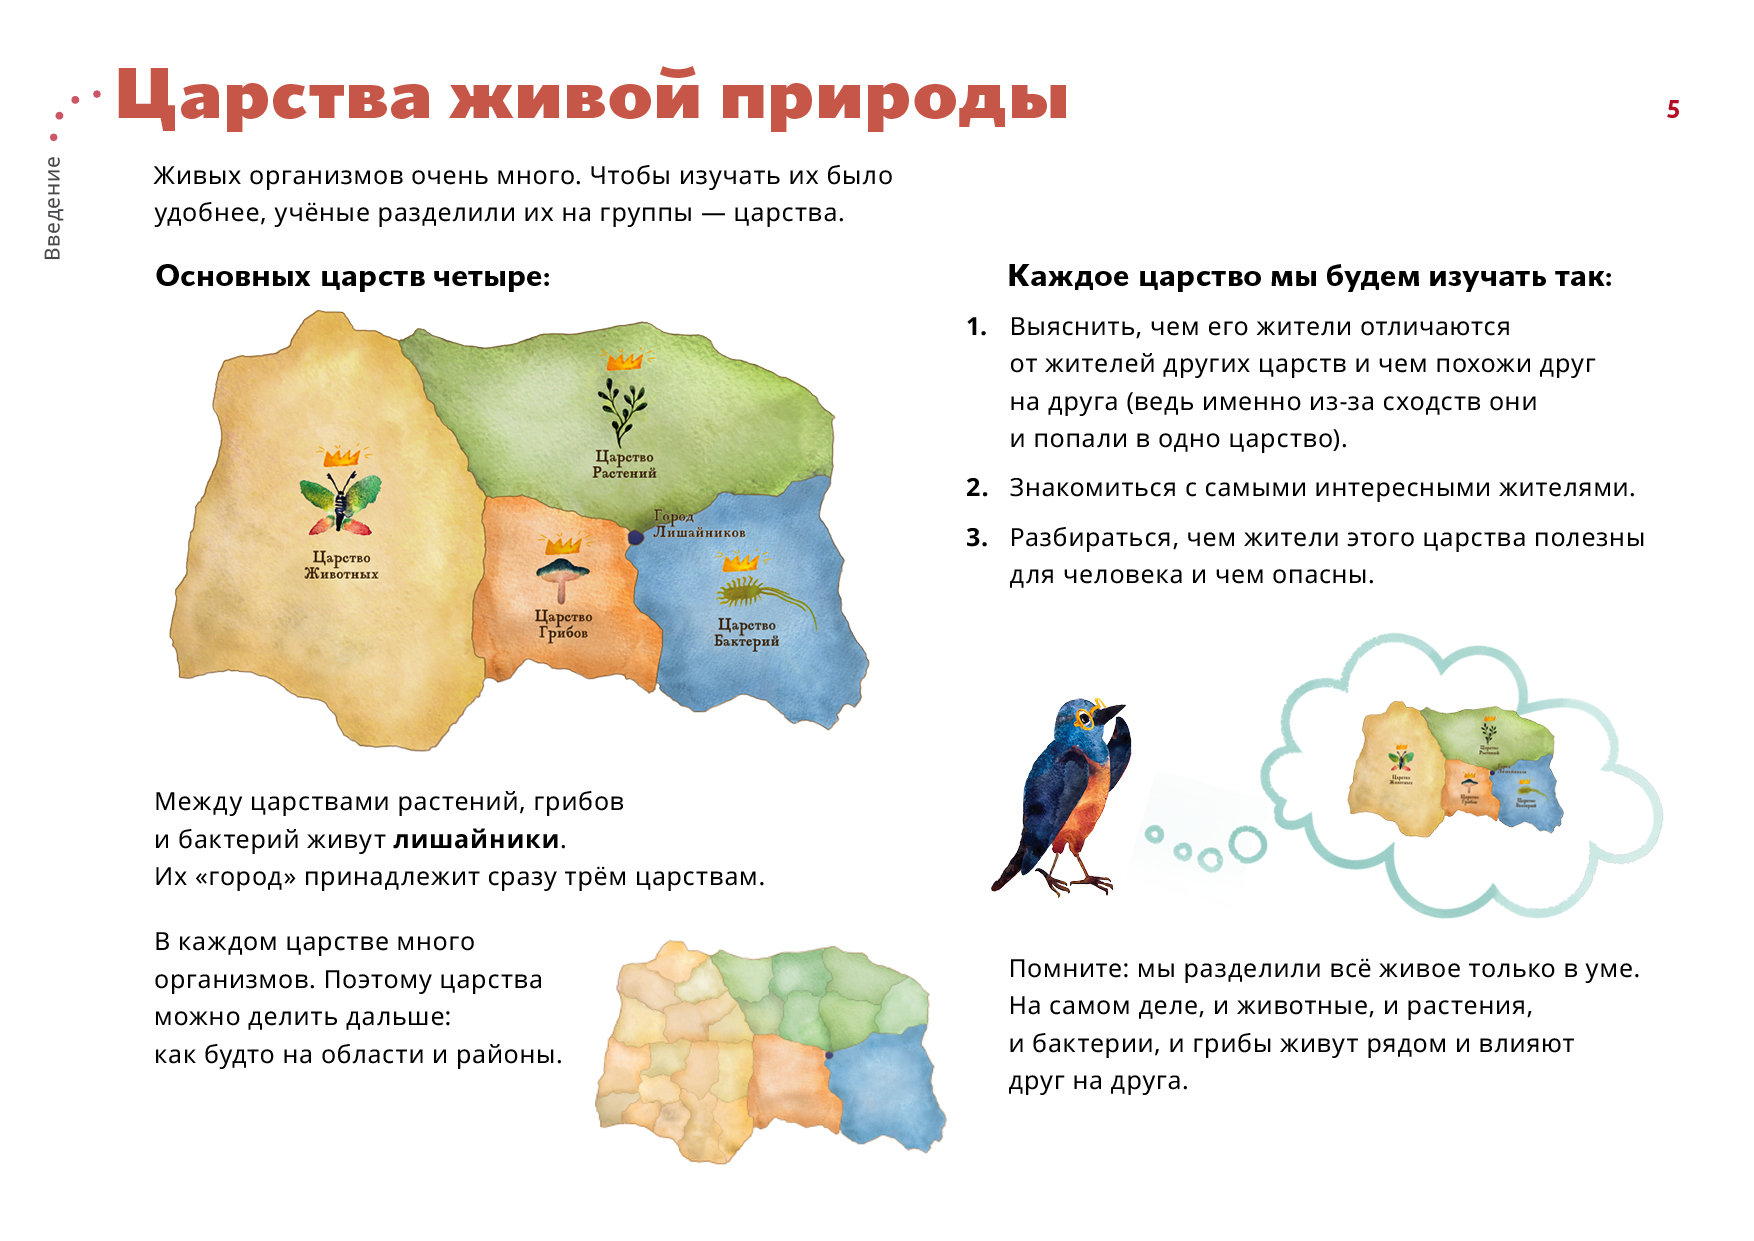 Карта царства природы